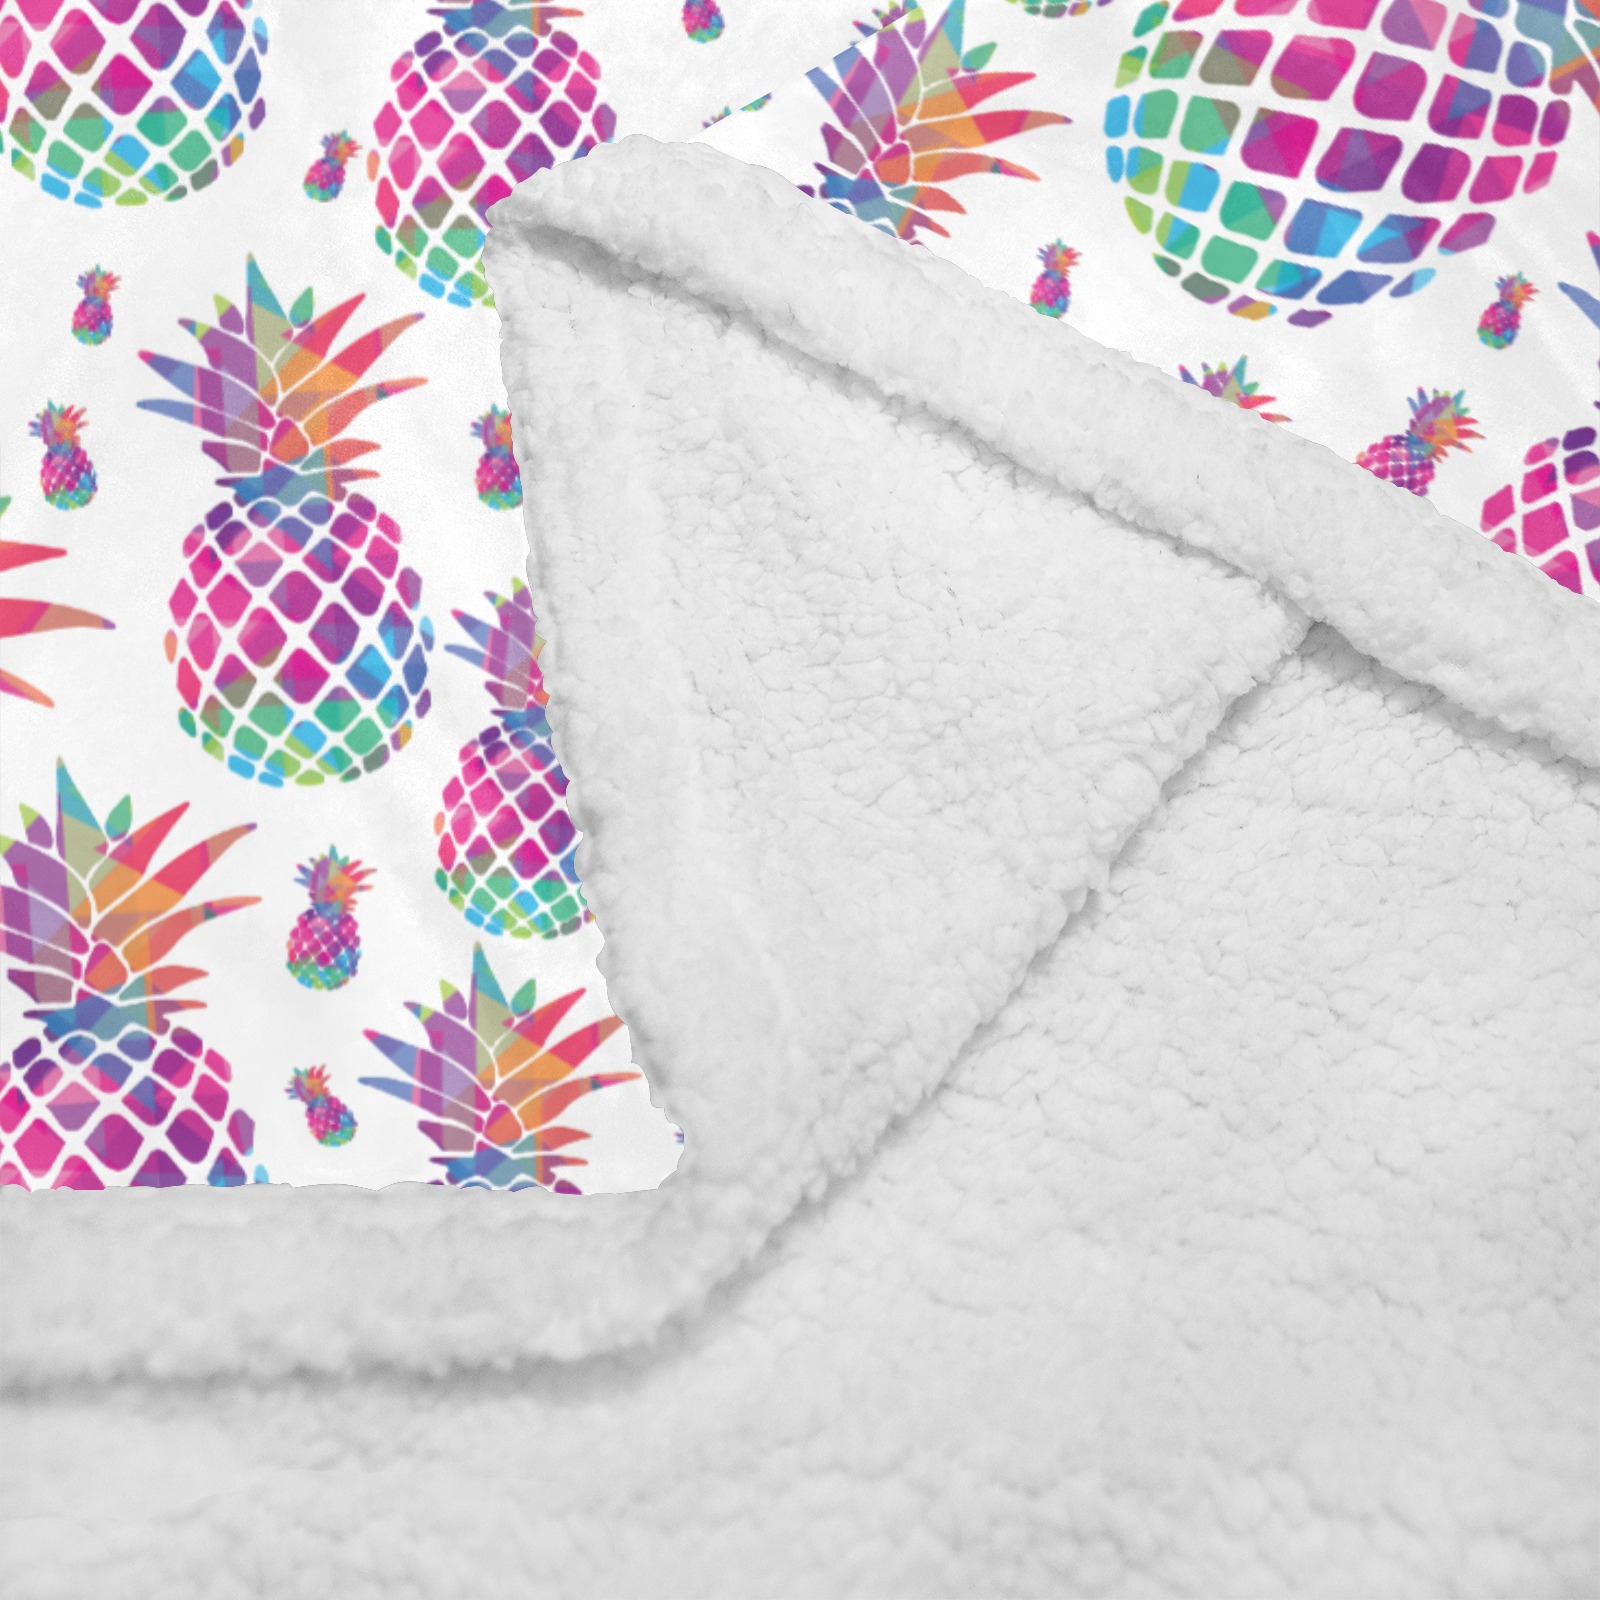 Vaporwave Retro Pineapple Blanket Double Layer Short Plush Blanket 50"x60"